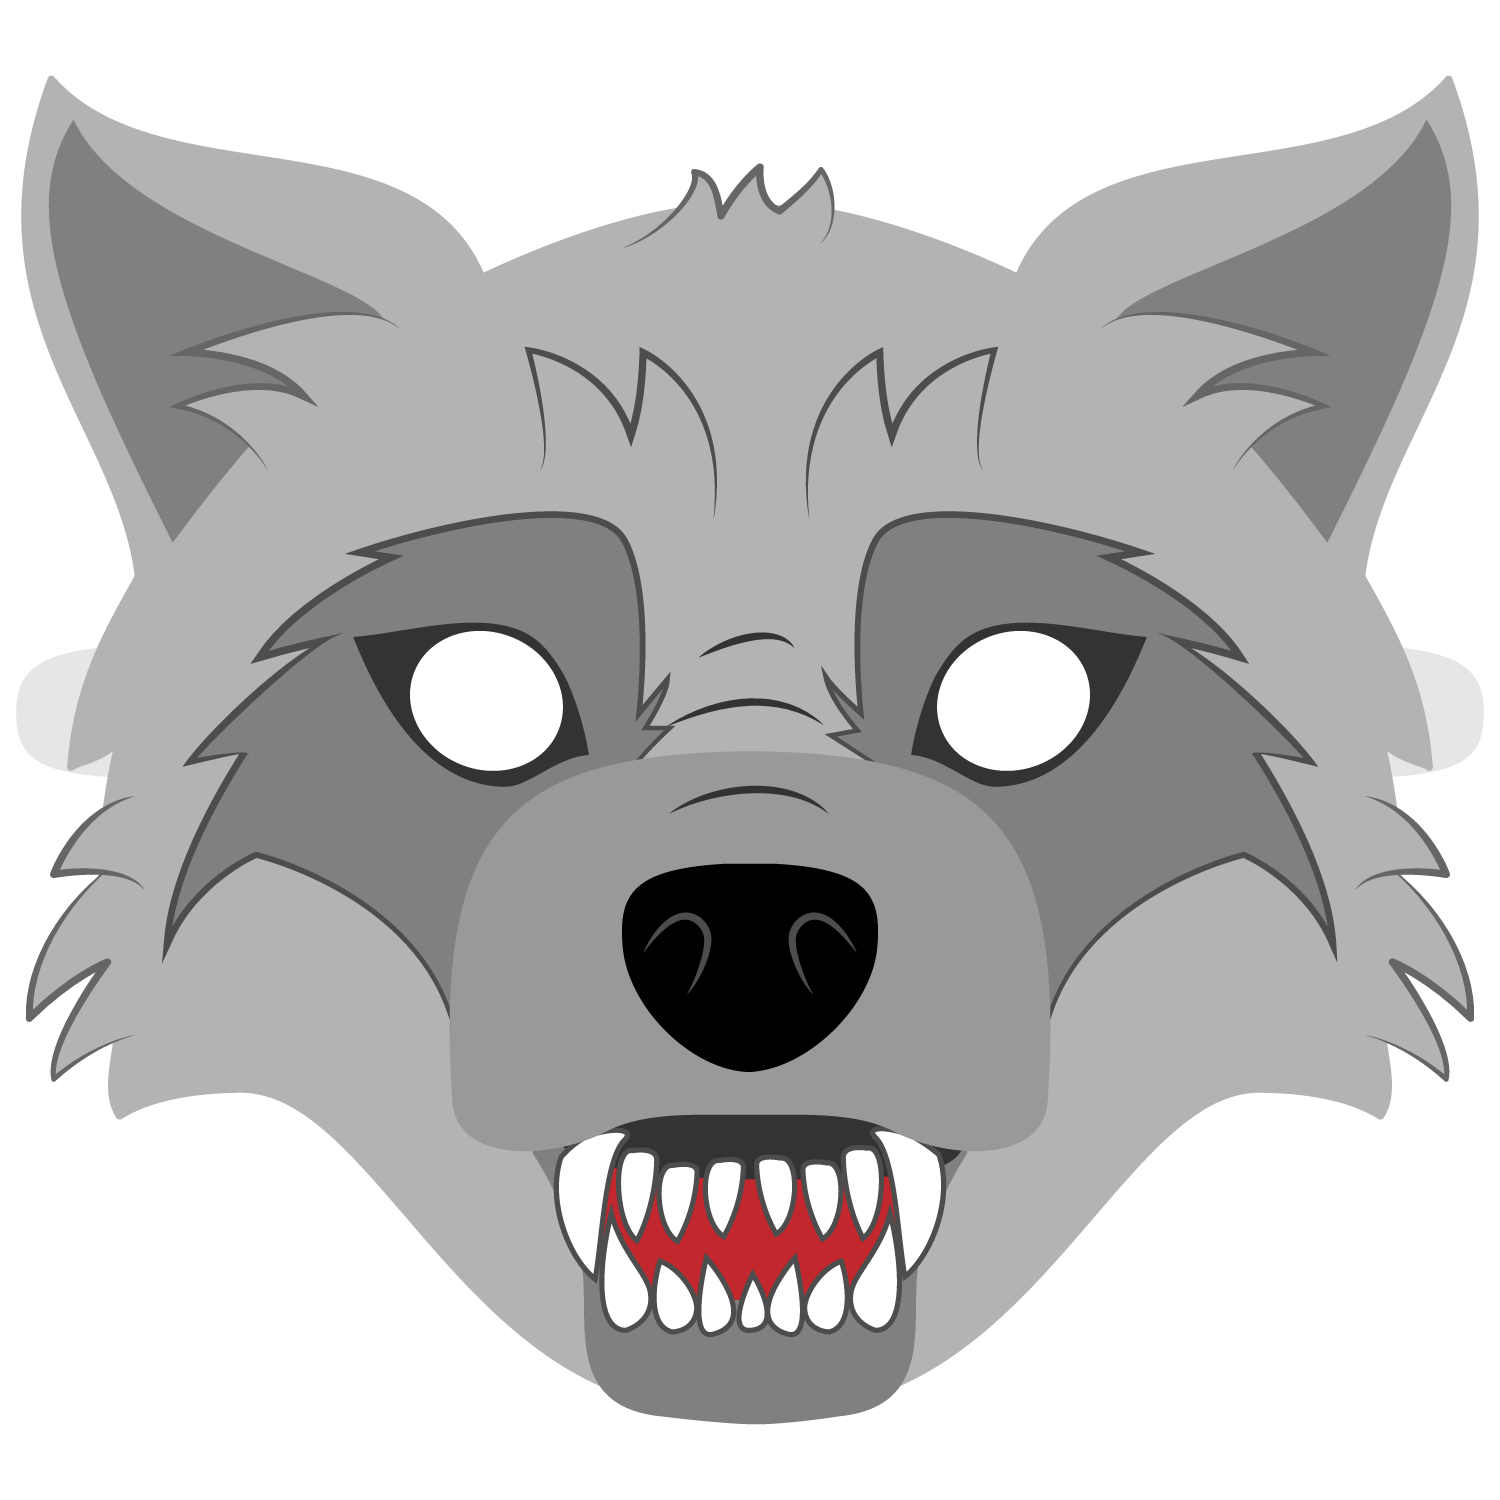 Big Bad Wolf Mask Template | Free Printable Papercraft Templates - Free Printable Wolf Face Mask